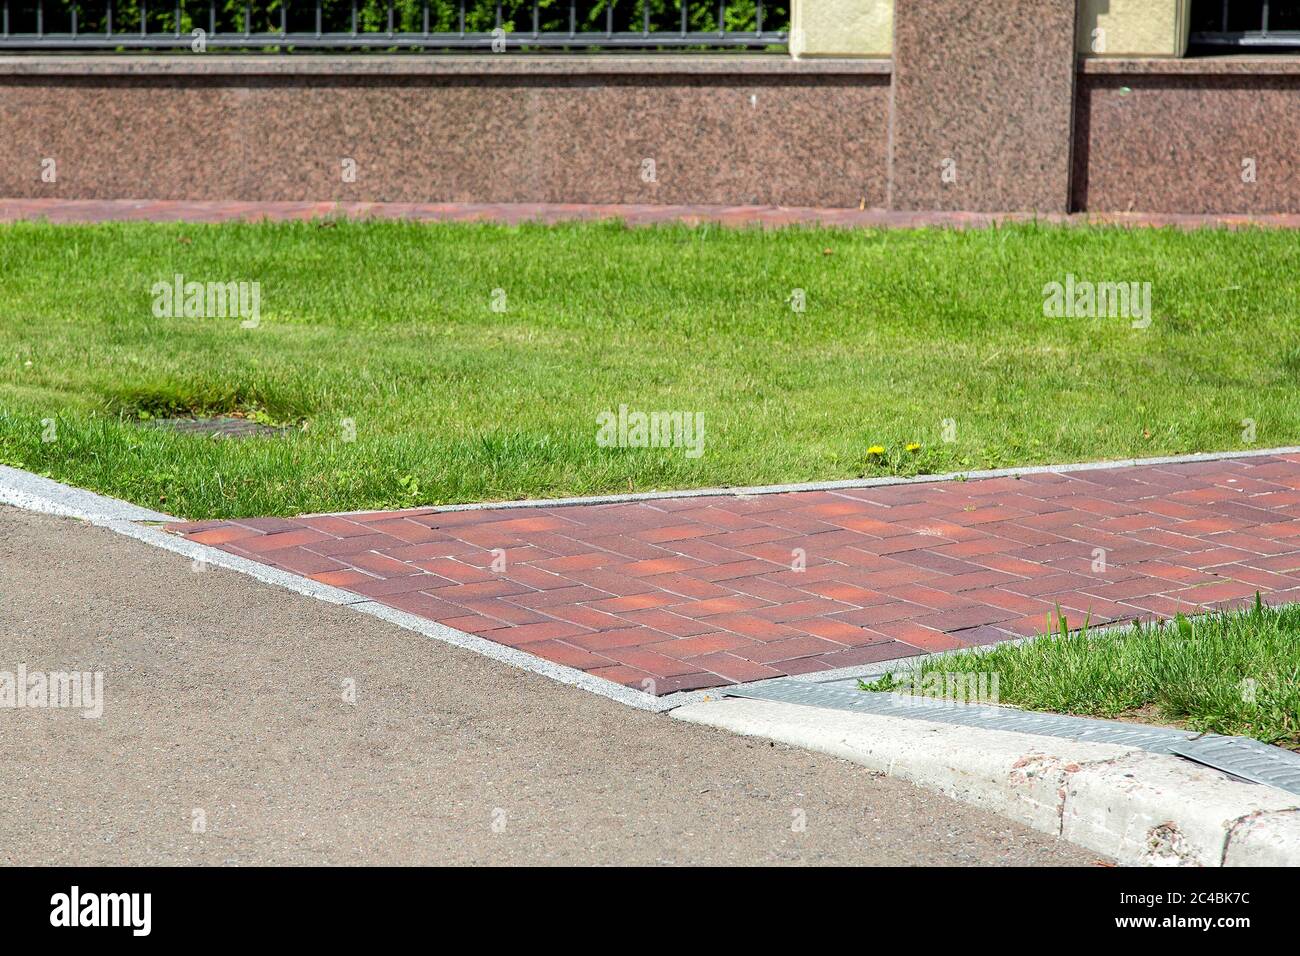 pavimento peatonal hecho de azulejos rojos que fluyen en la carretera de asfalto con un bordillo en la valla de piedra con un césped verde iluminado por la luz del sol. Foto de stock